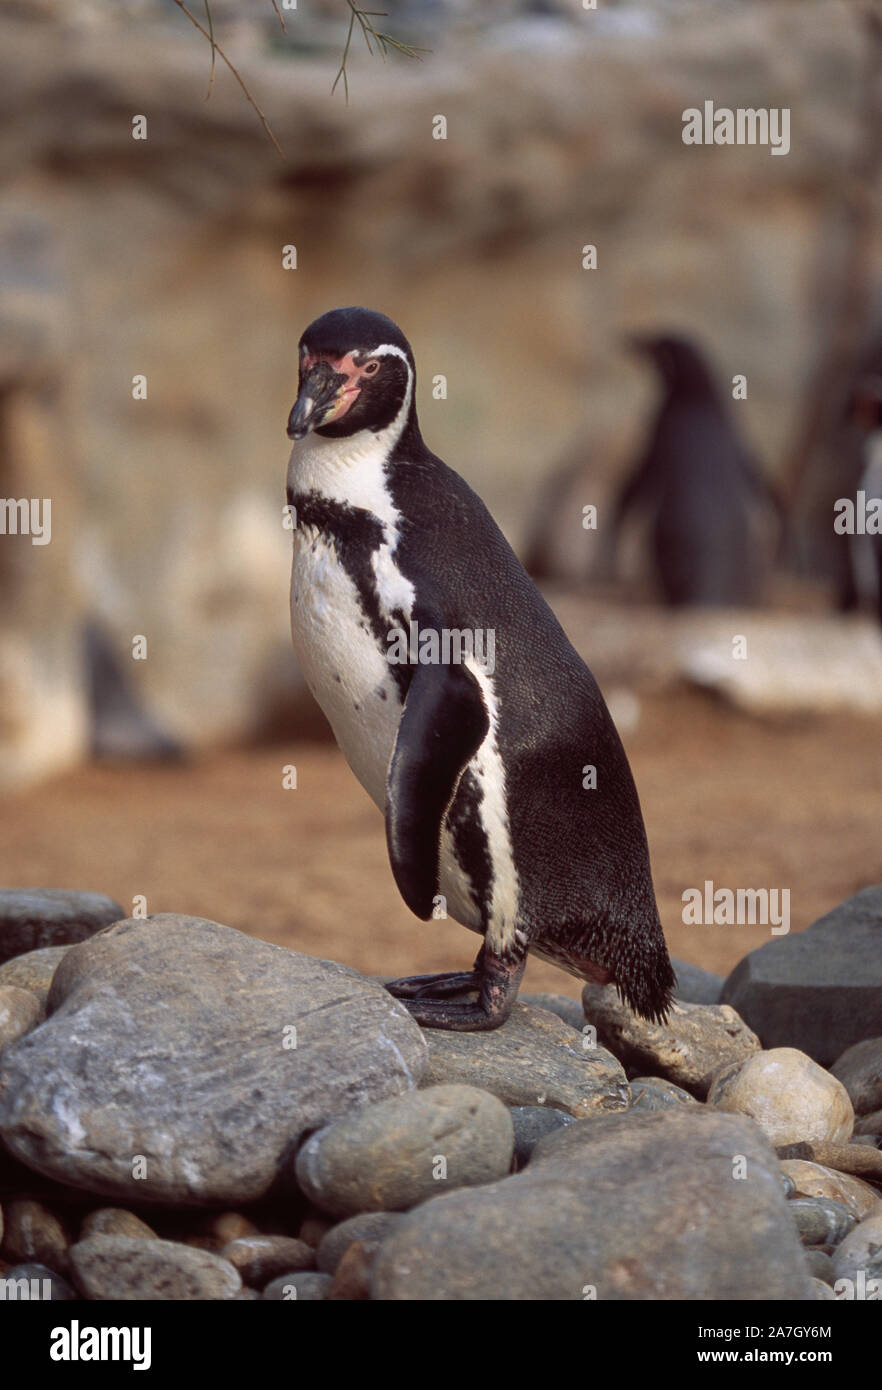 HUMBOLDTS PINGUIN (Spheniscus humboldti). In einem Zoo. Erwachsener steht auf Felsen, Felsbrocken. Webbed Füße, flipper wie Flügel Anpassung zum Schwimmen. Stockfoto